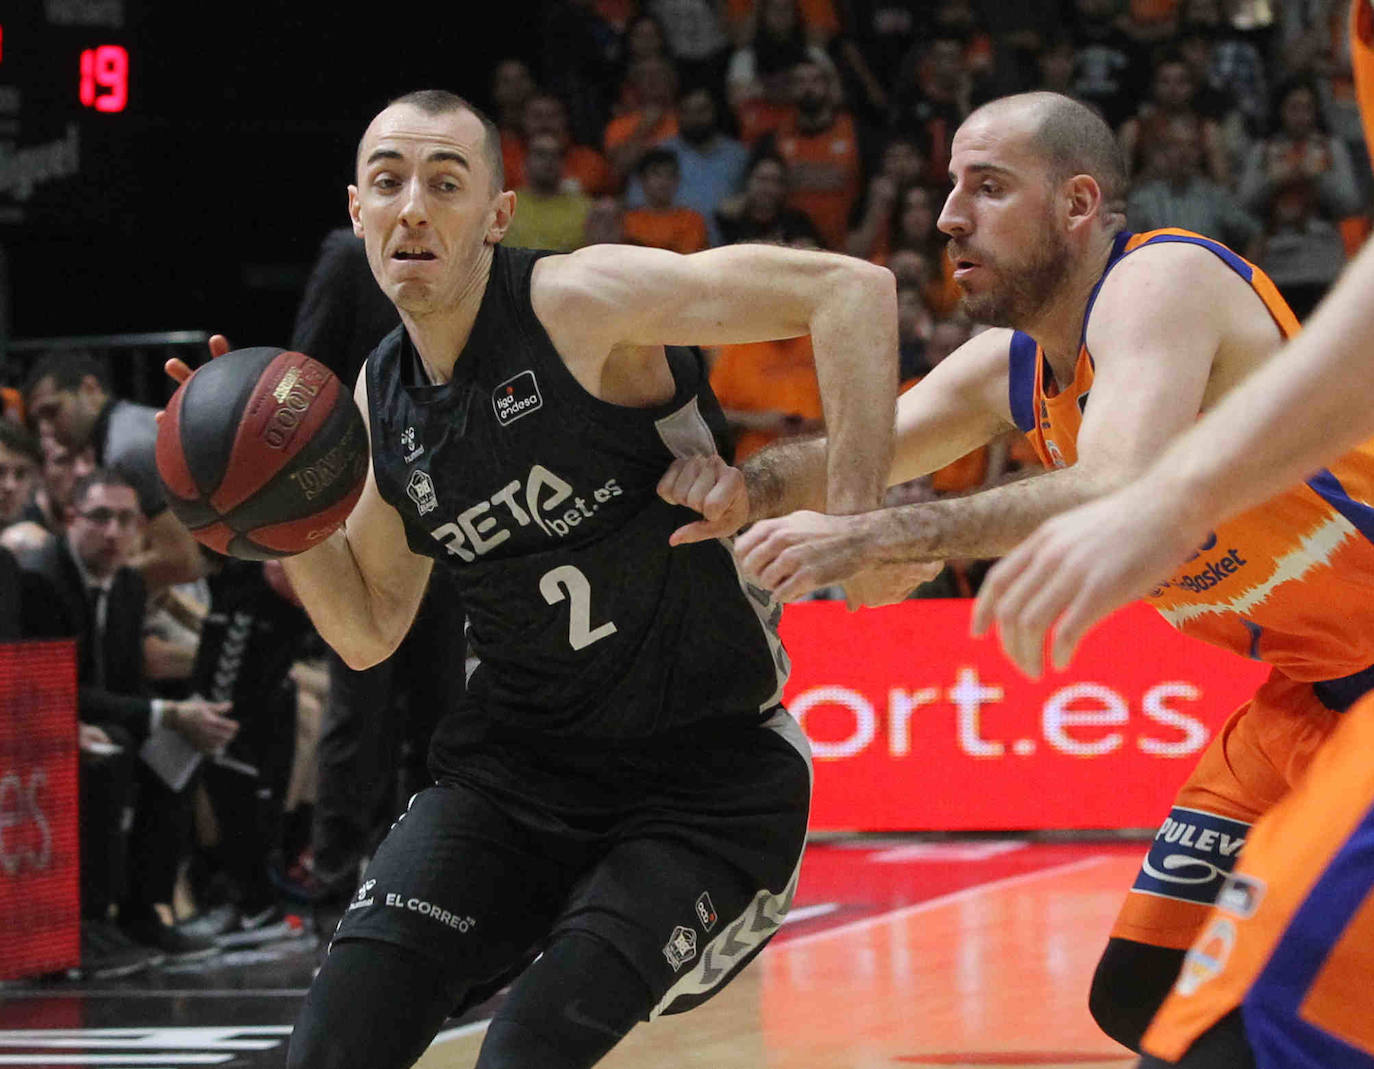 Fotos: El Valencia - Bilbao Basket, en imágenes